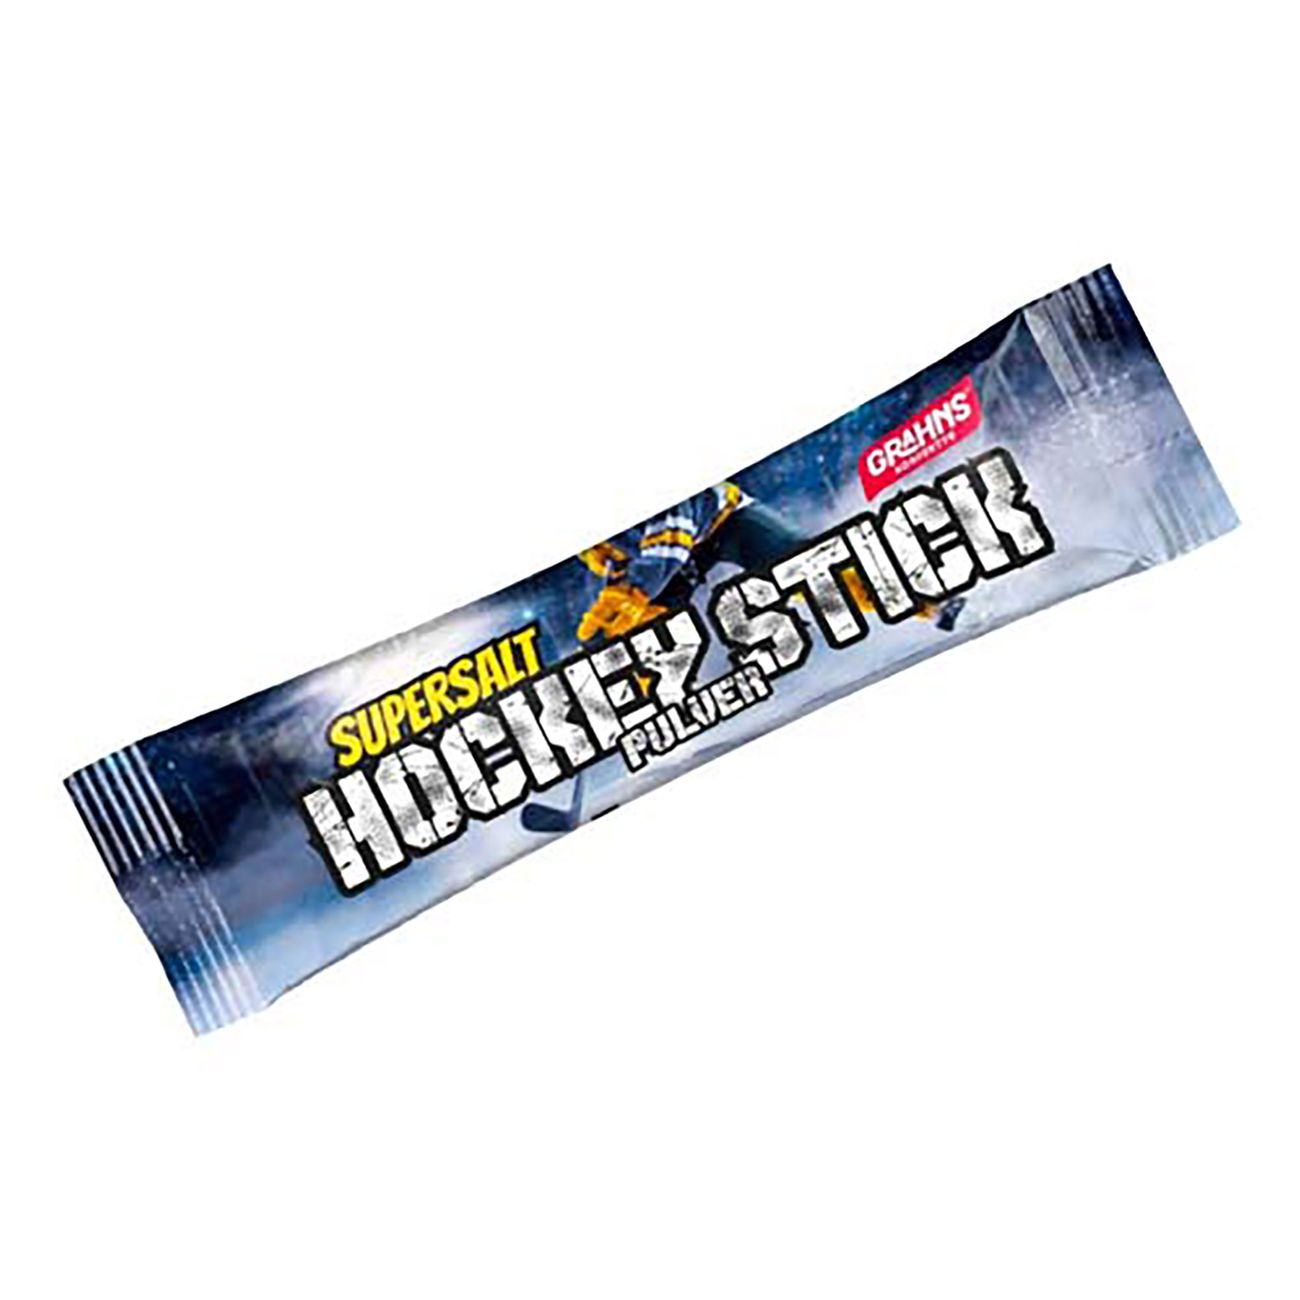 hockey-stick-supersalt-storpack-85702-1